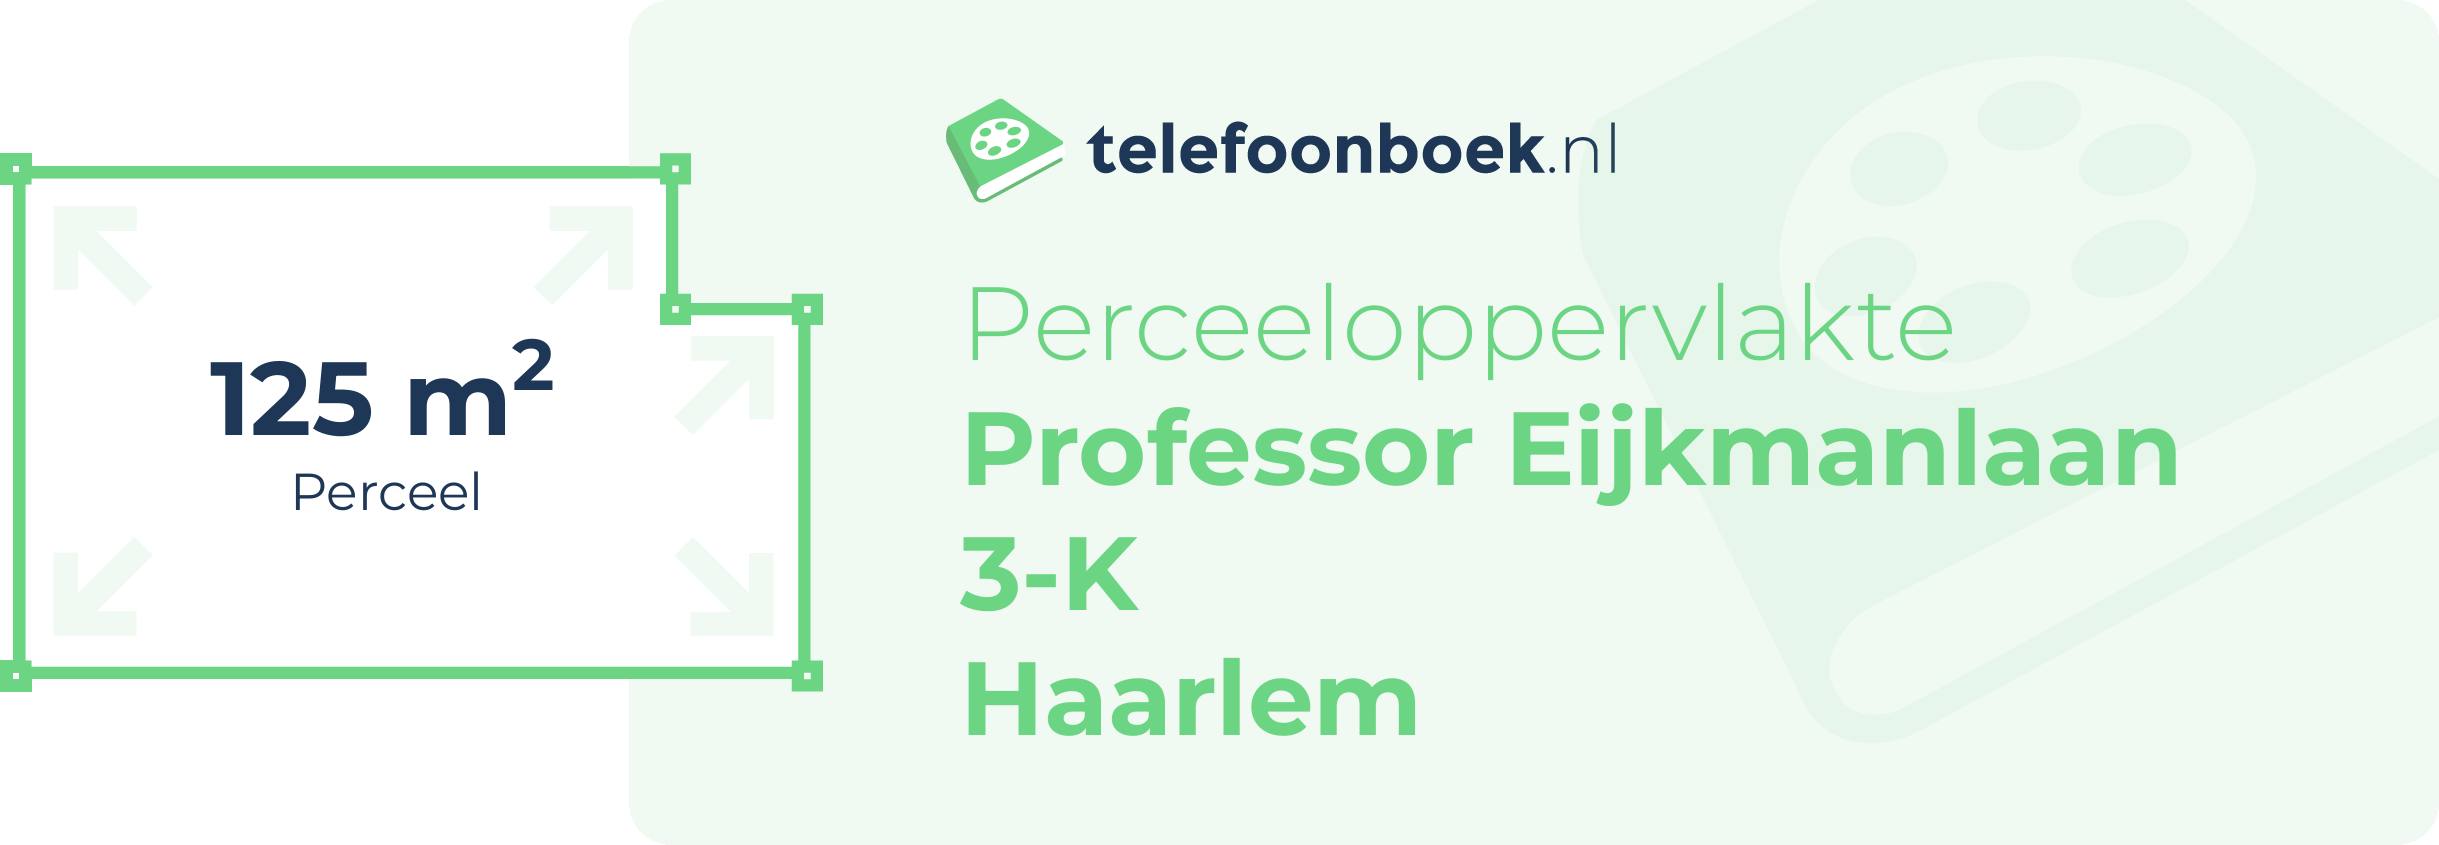 Perceeloppervlakte Professor Eijkmanlaan 3-K Haarlem